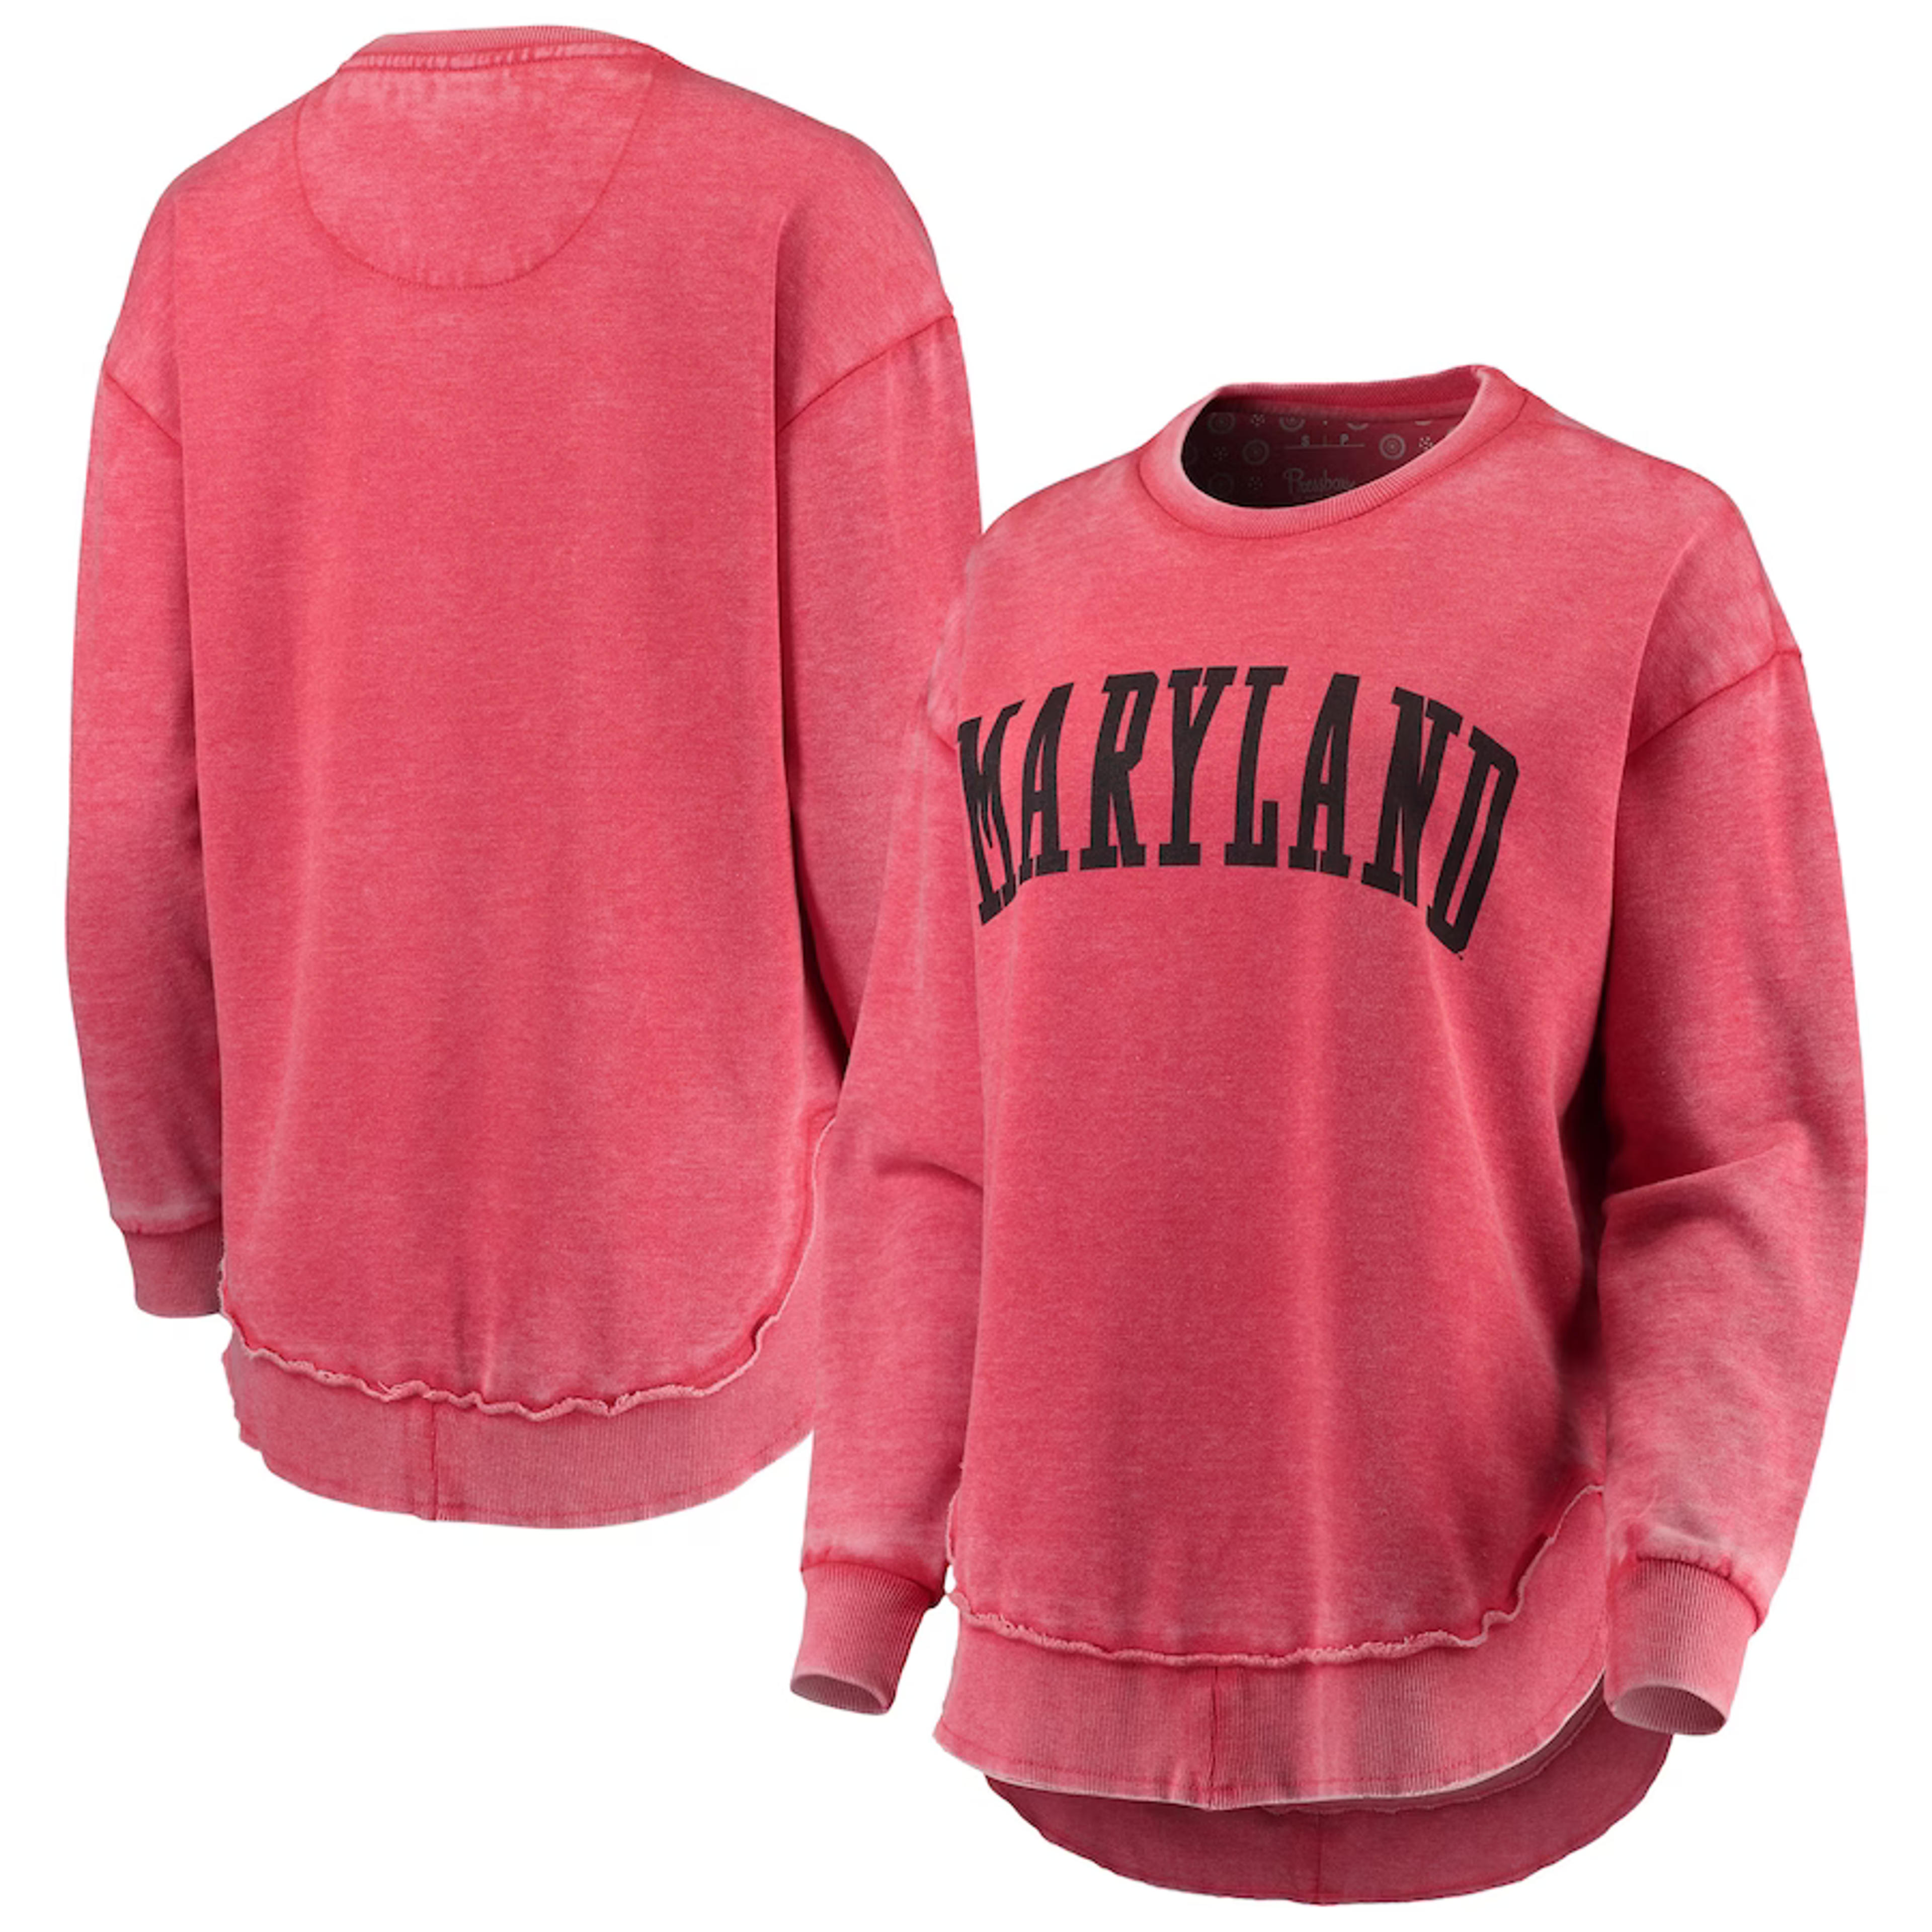 Maryland Terrapins Pressbox Women's Vintage Wash Pullover Sweatshirt - Red